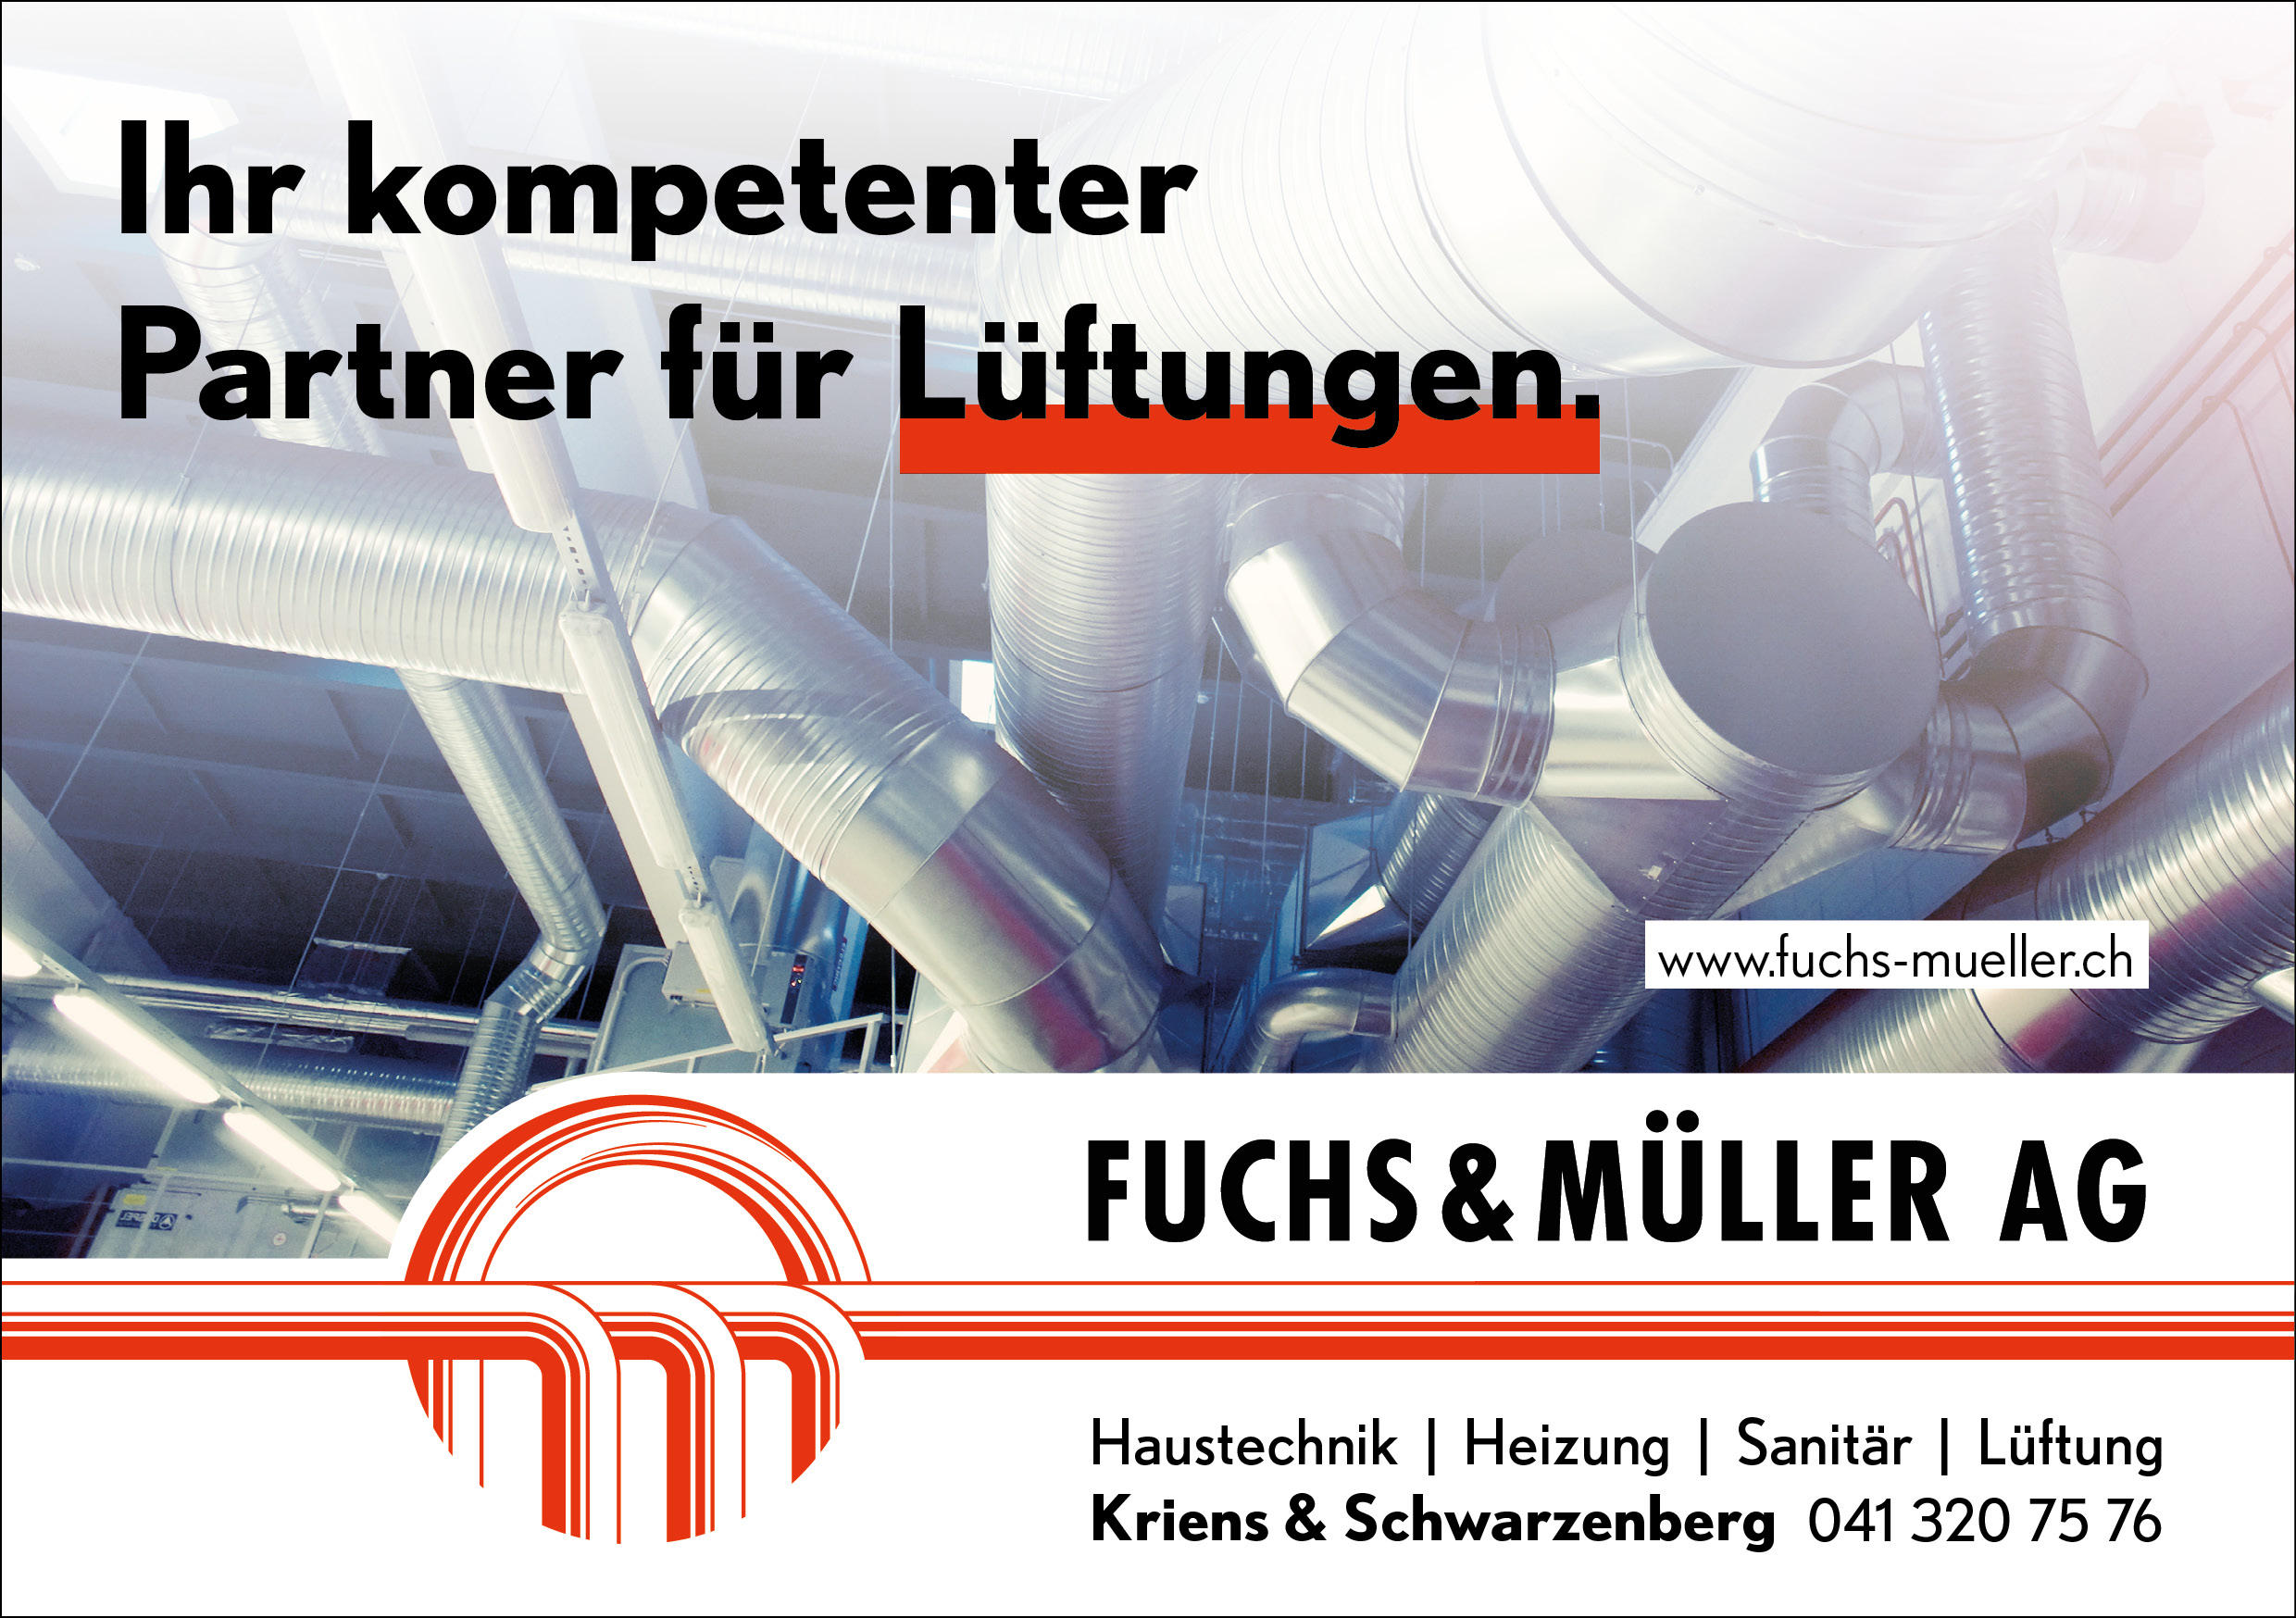 Bilder Fuchs & Müller AG